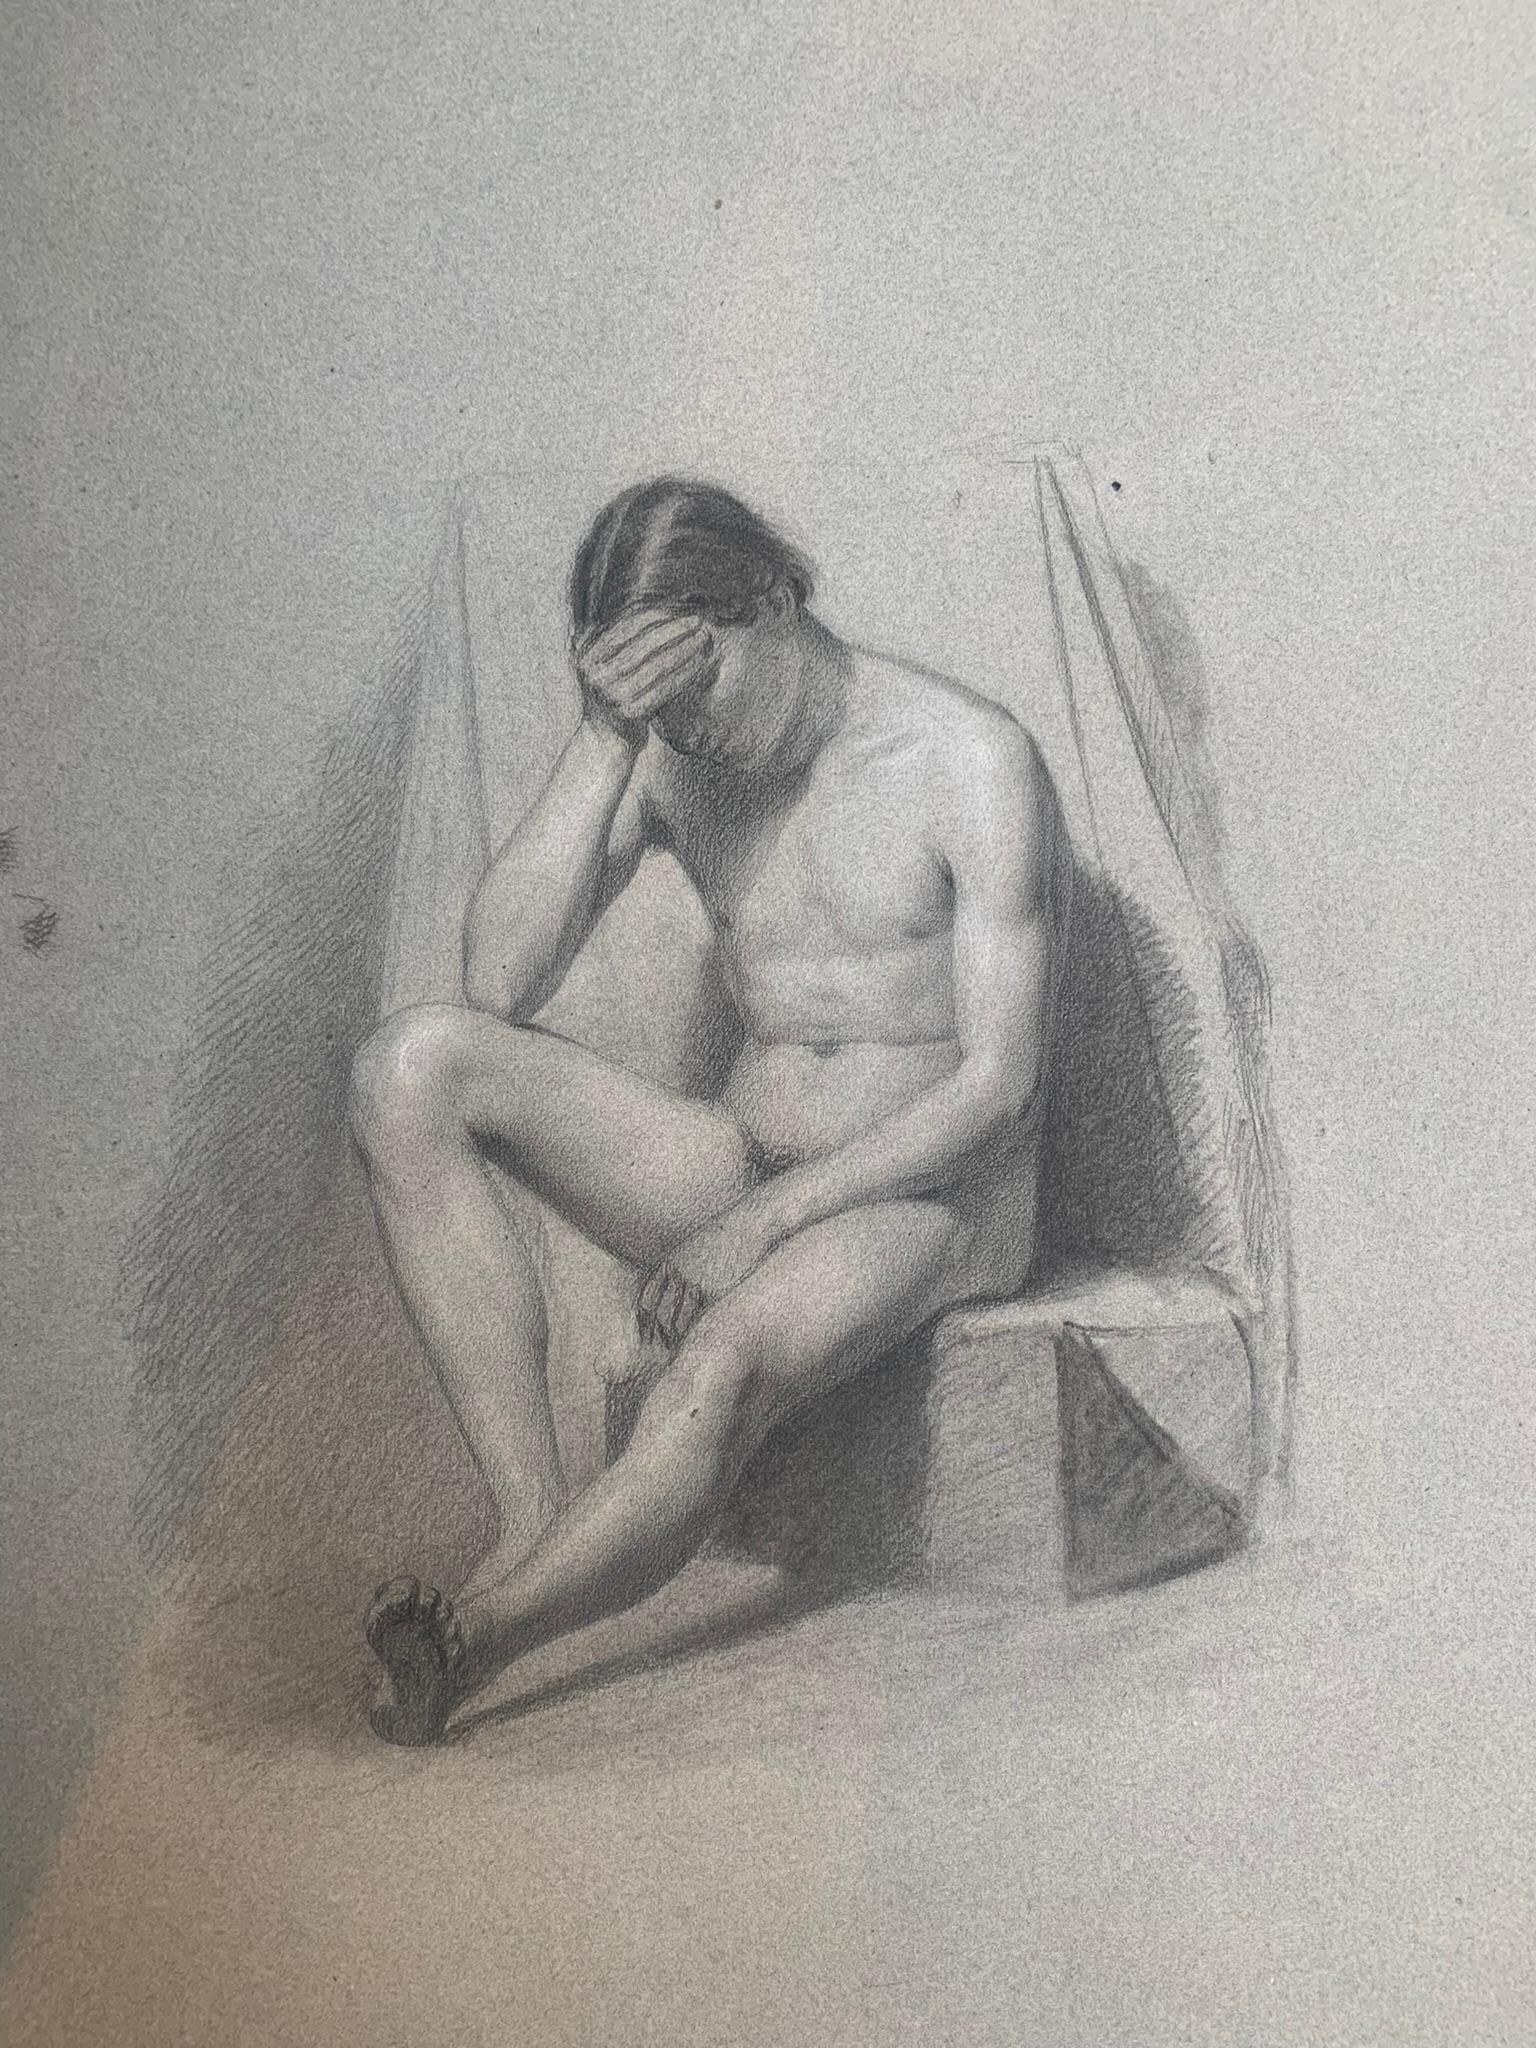 Akademisches Zeichnen. Figurenstudie eines sitzenden nackten jungen Mannes. 19. Jahrhundert. – Art von Unknown